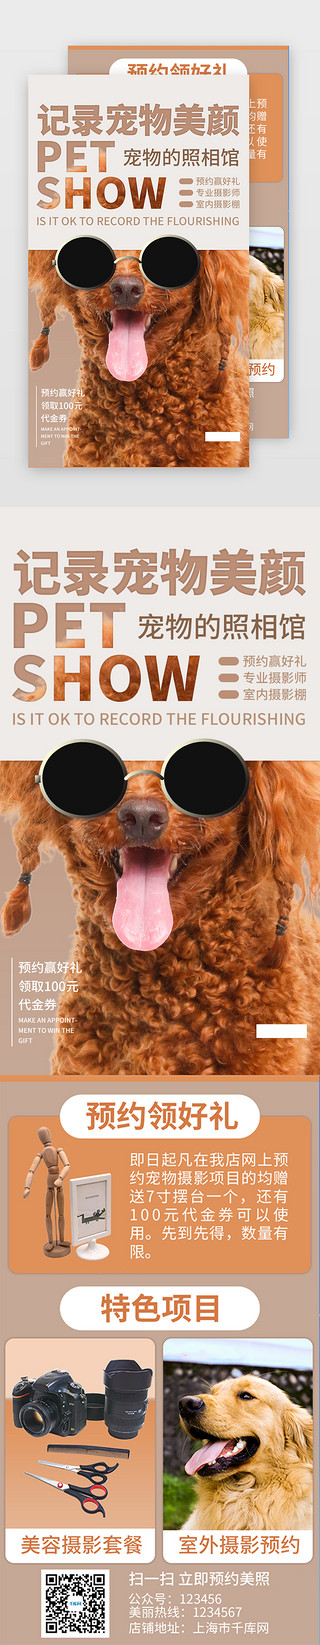 摄影图海报UI设计素材_黄色宠物摄影美容宣传促销H5